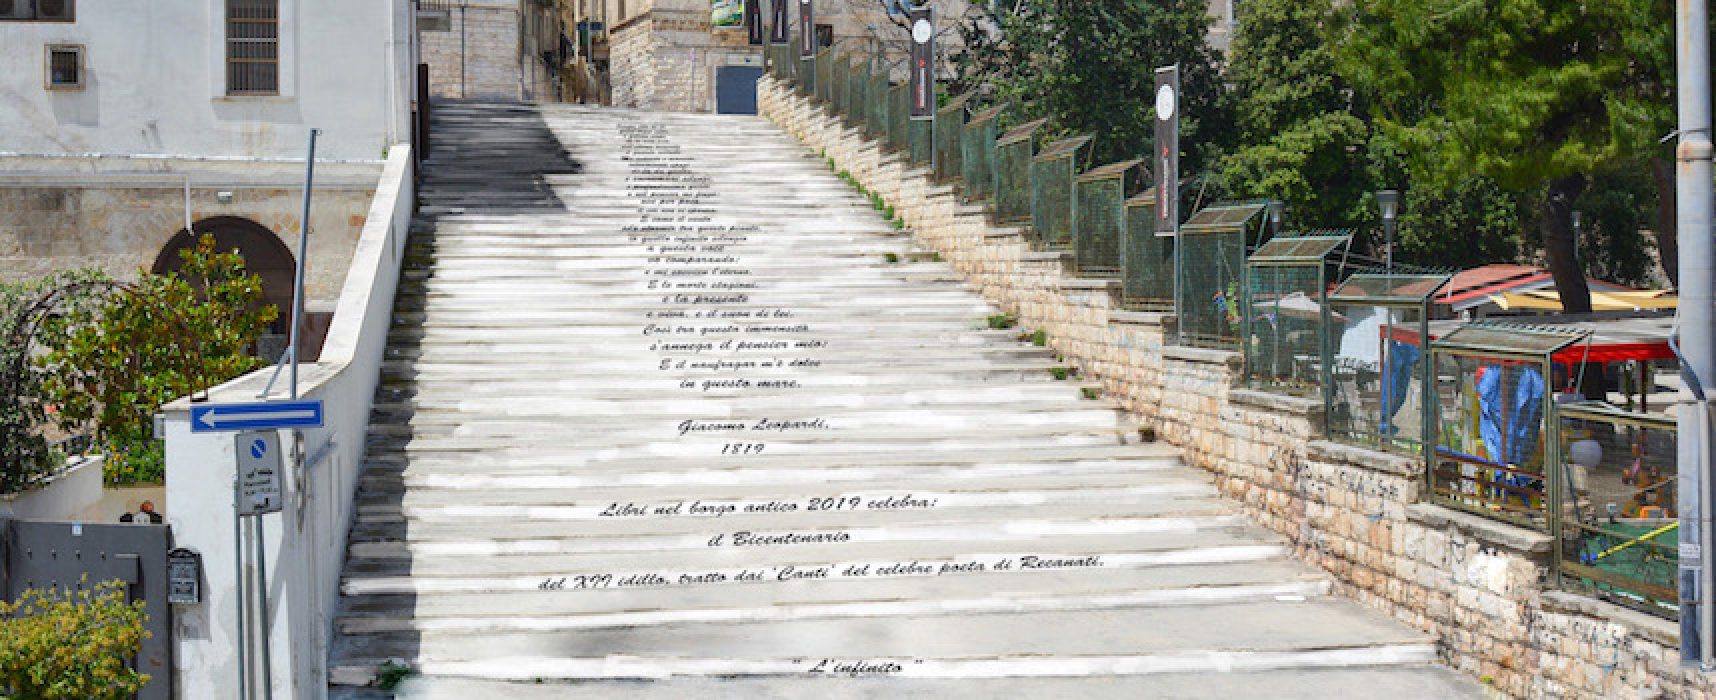 Libri nel Borgo Antico, la scalinata di via Porto sarà decorata con i versi di Leopardi